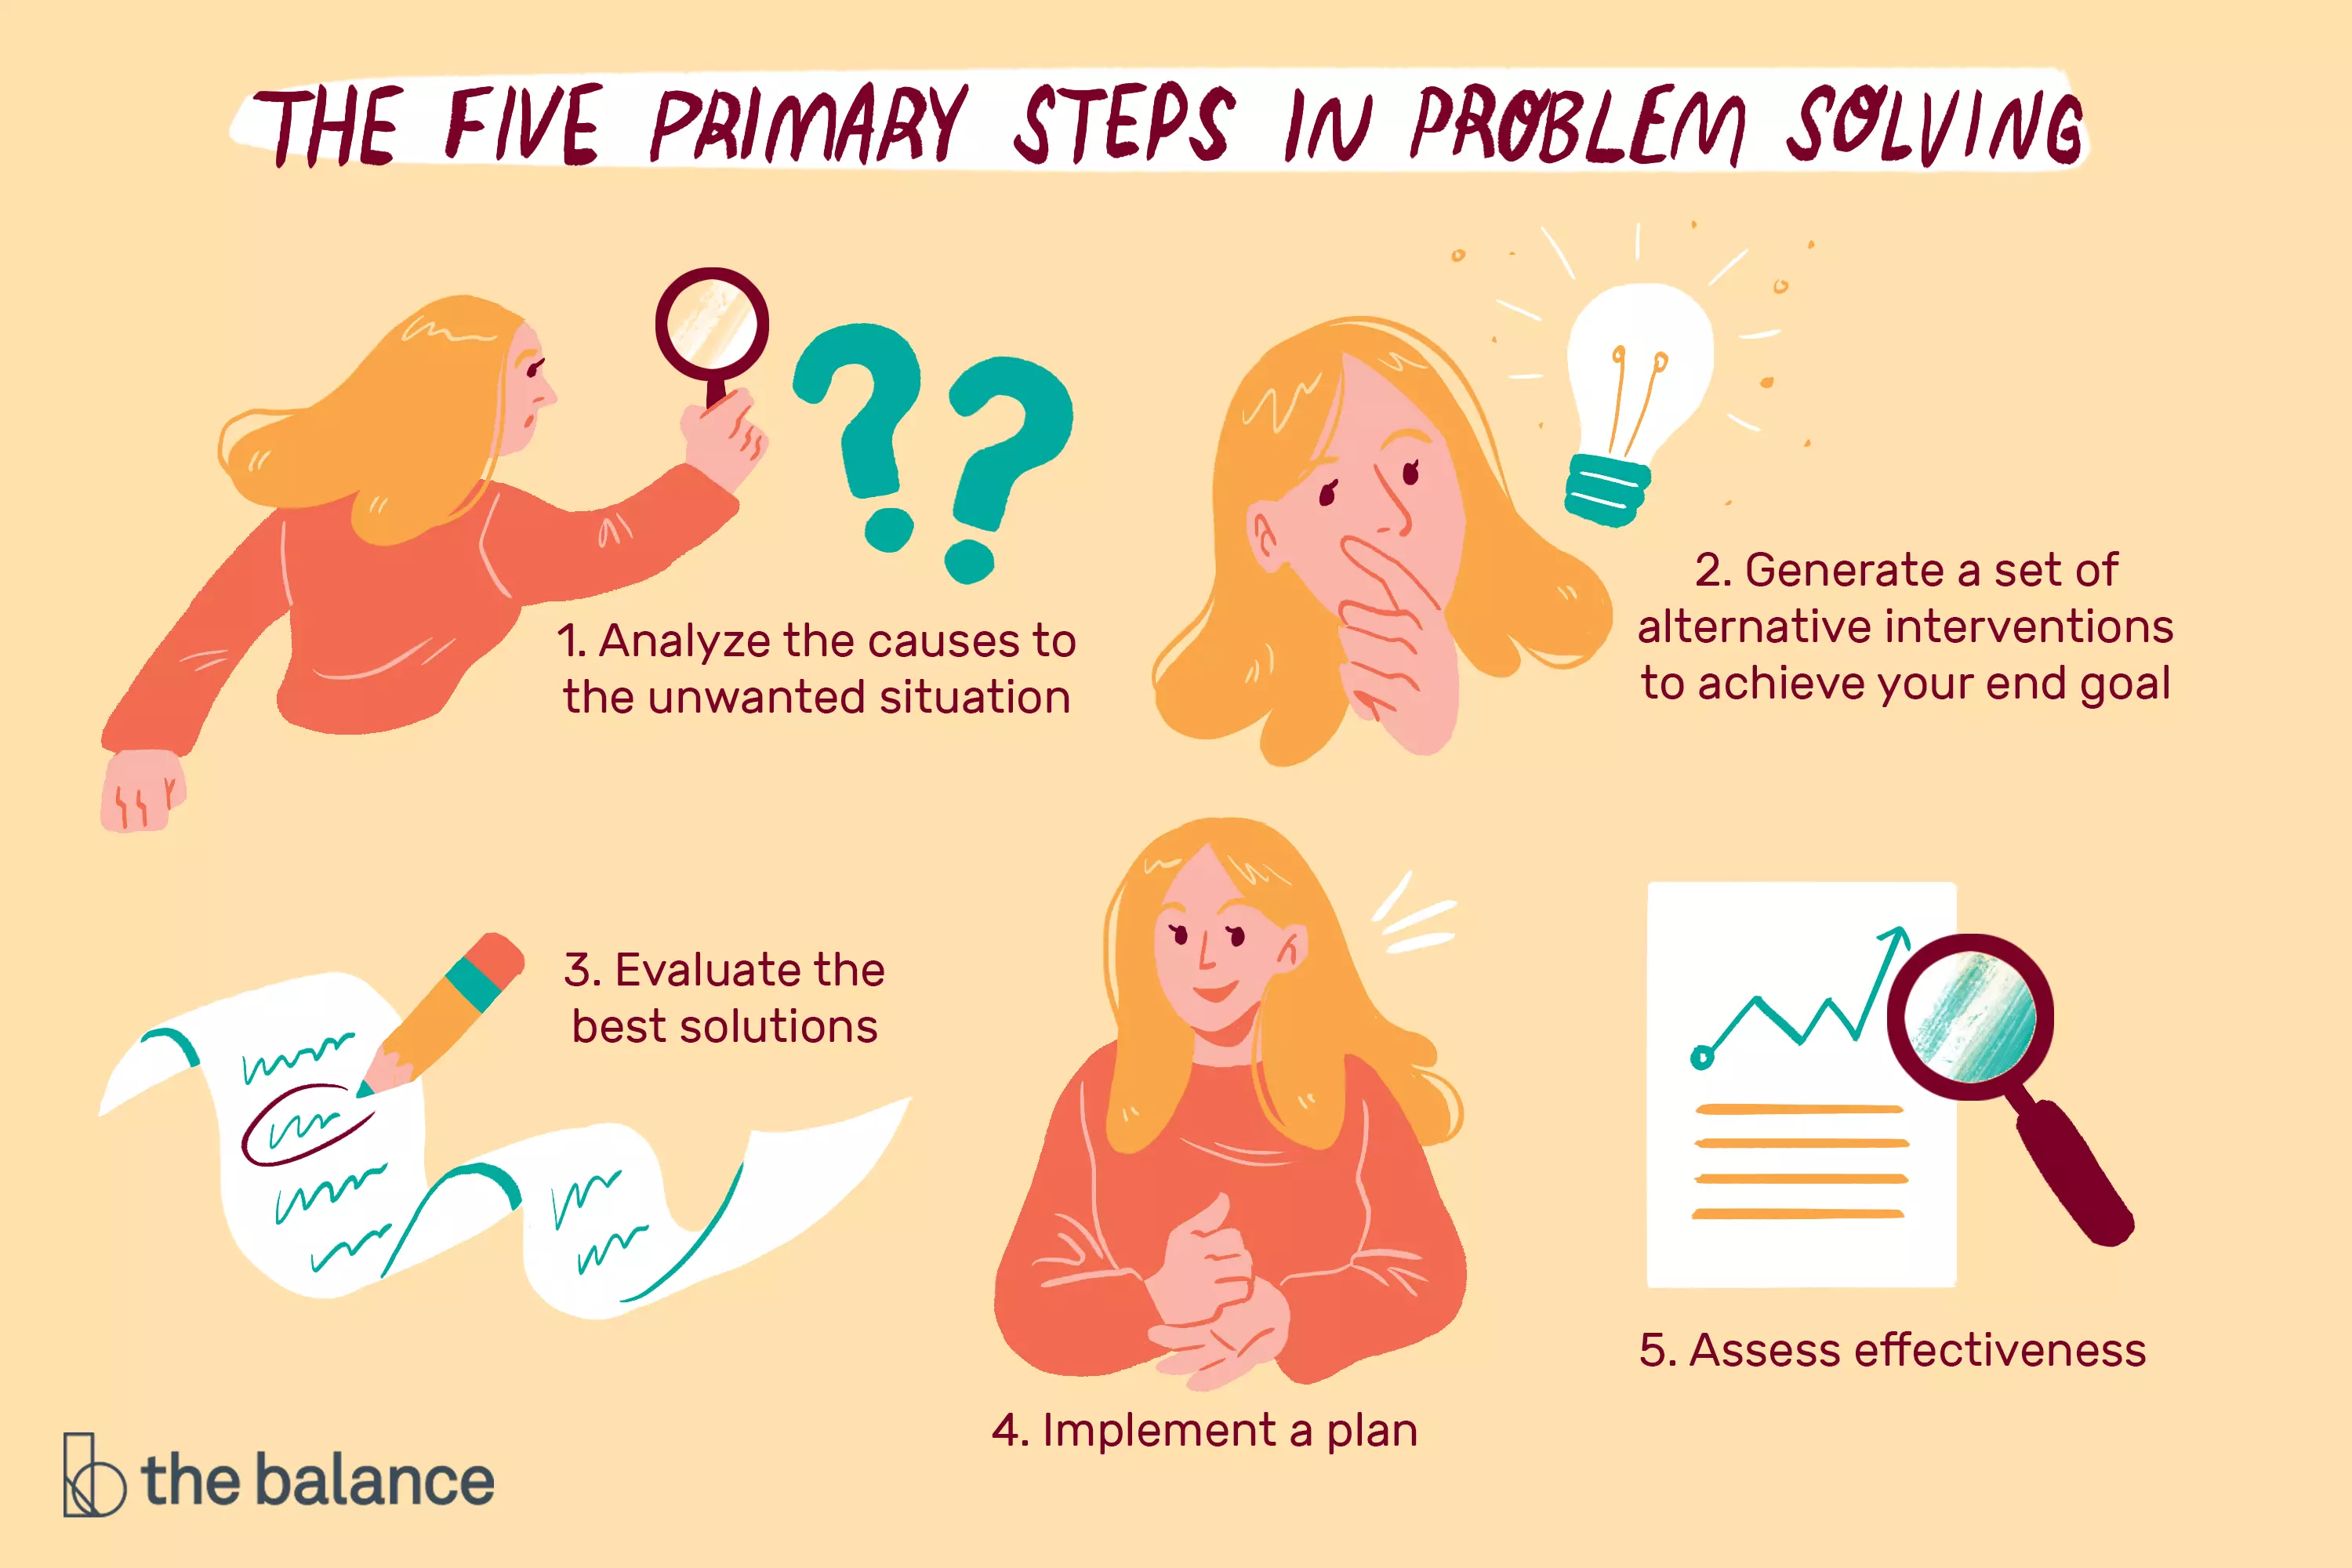 Una ilustración de los cinco pasos de la resolución de problemas, como se encuentra en el artículo.